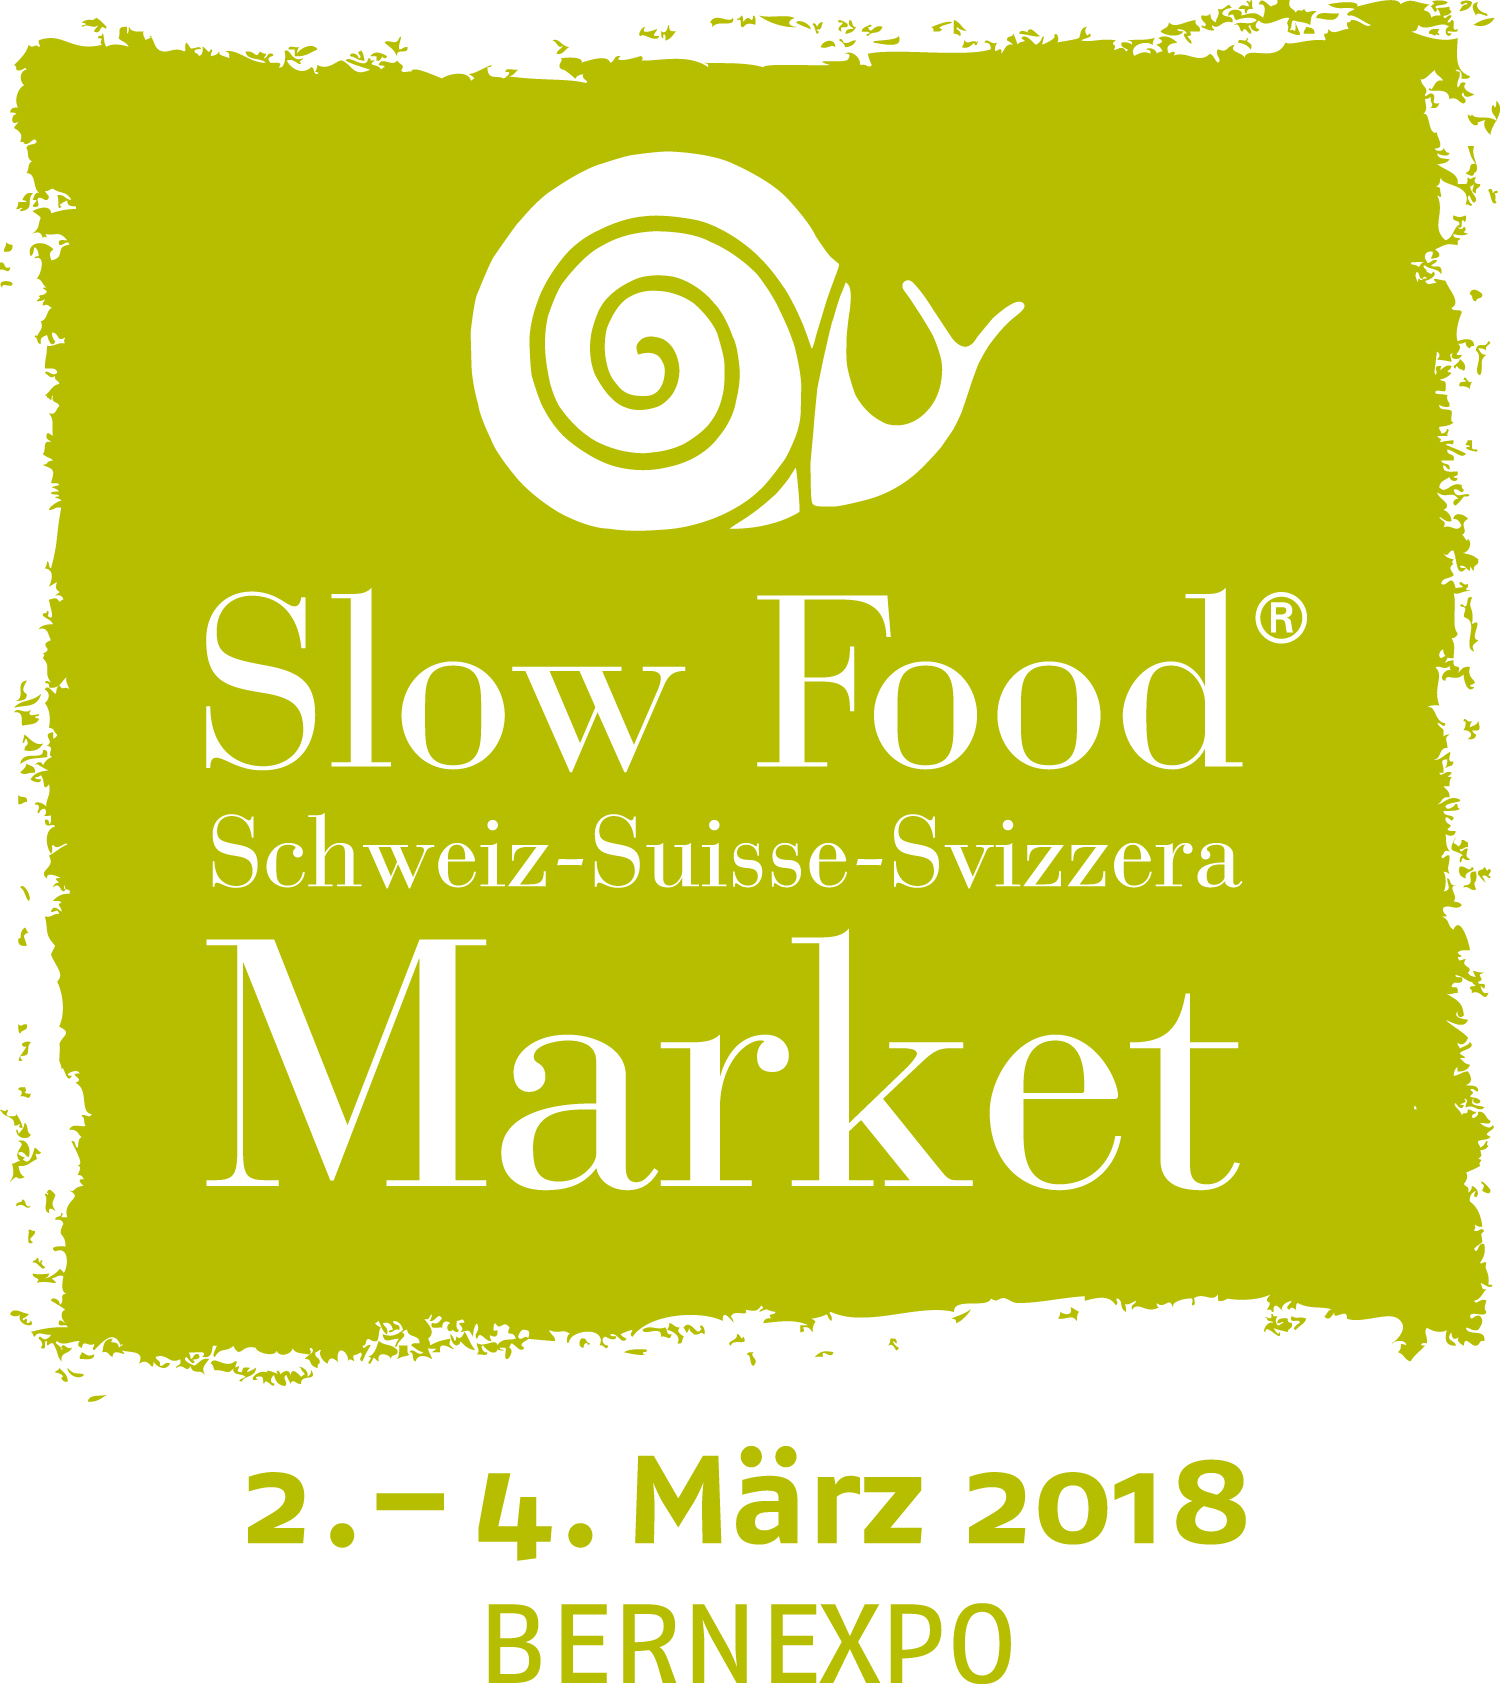 Slow Food Market Bern